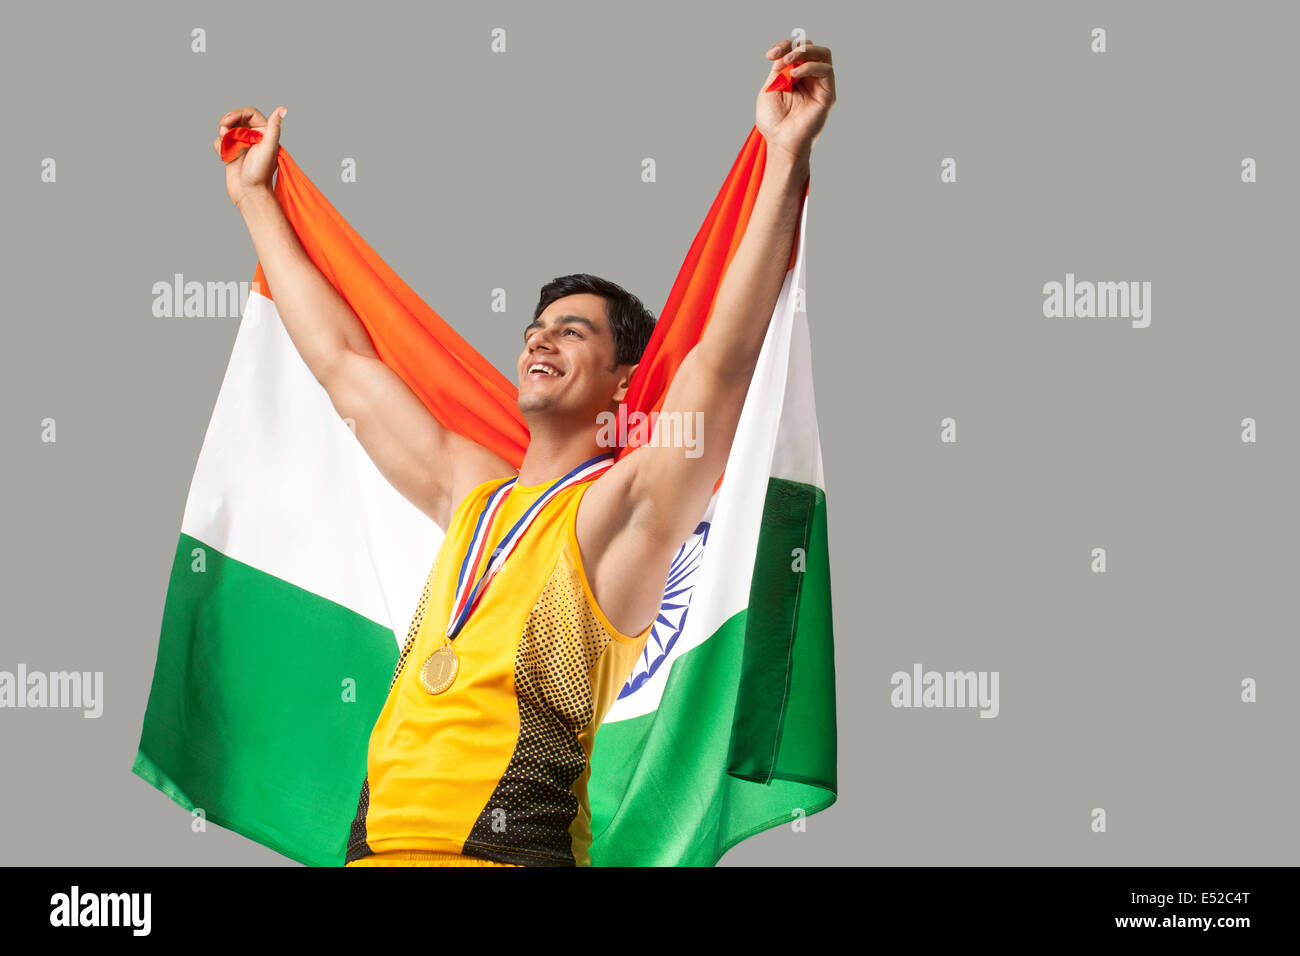 Heureux de célébrer la victoire avec le médaillé d'hommes drapeau indien contre l'arrière-plan gris Banque D'Images